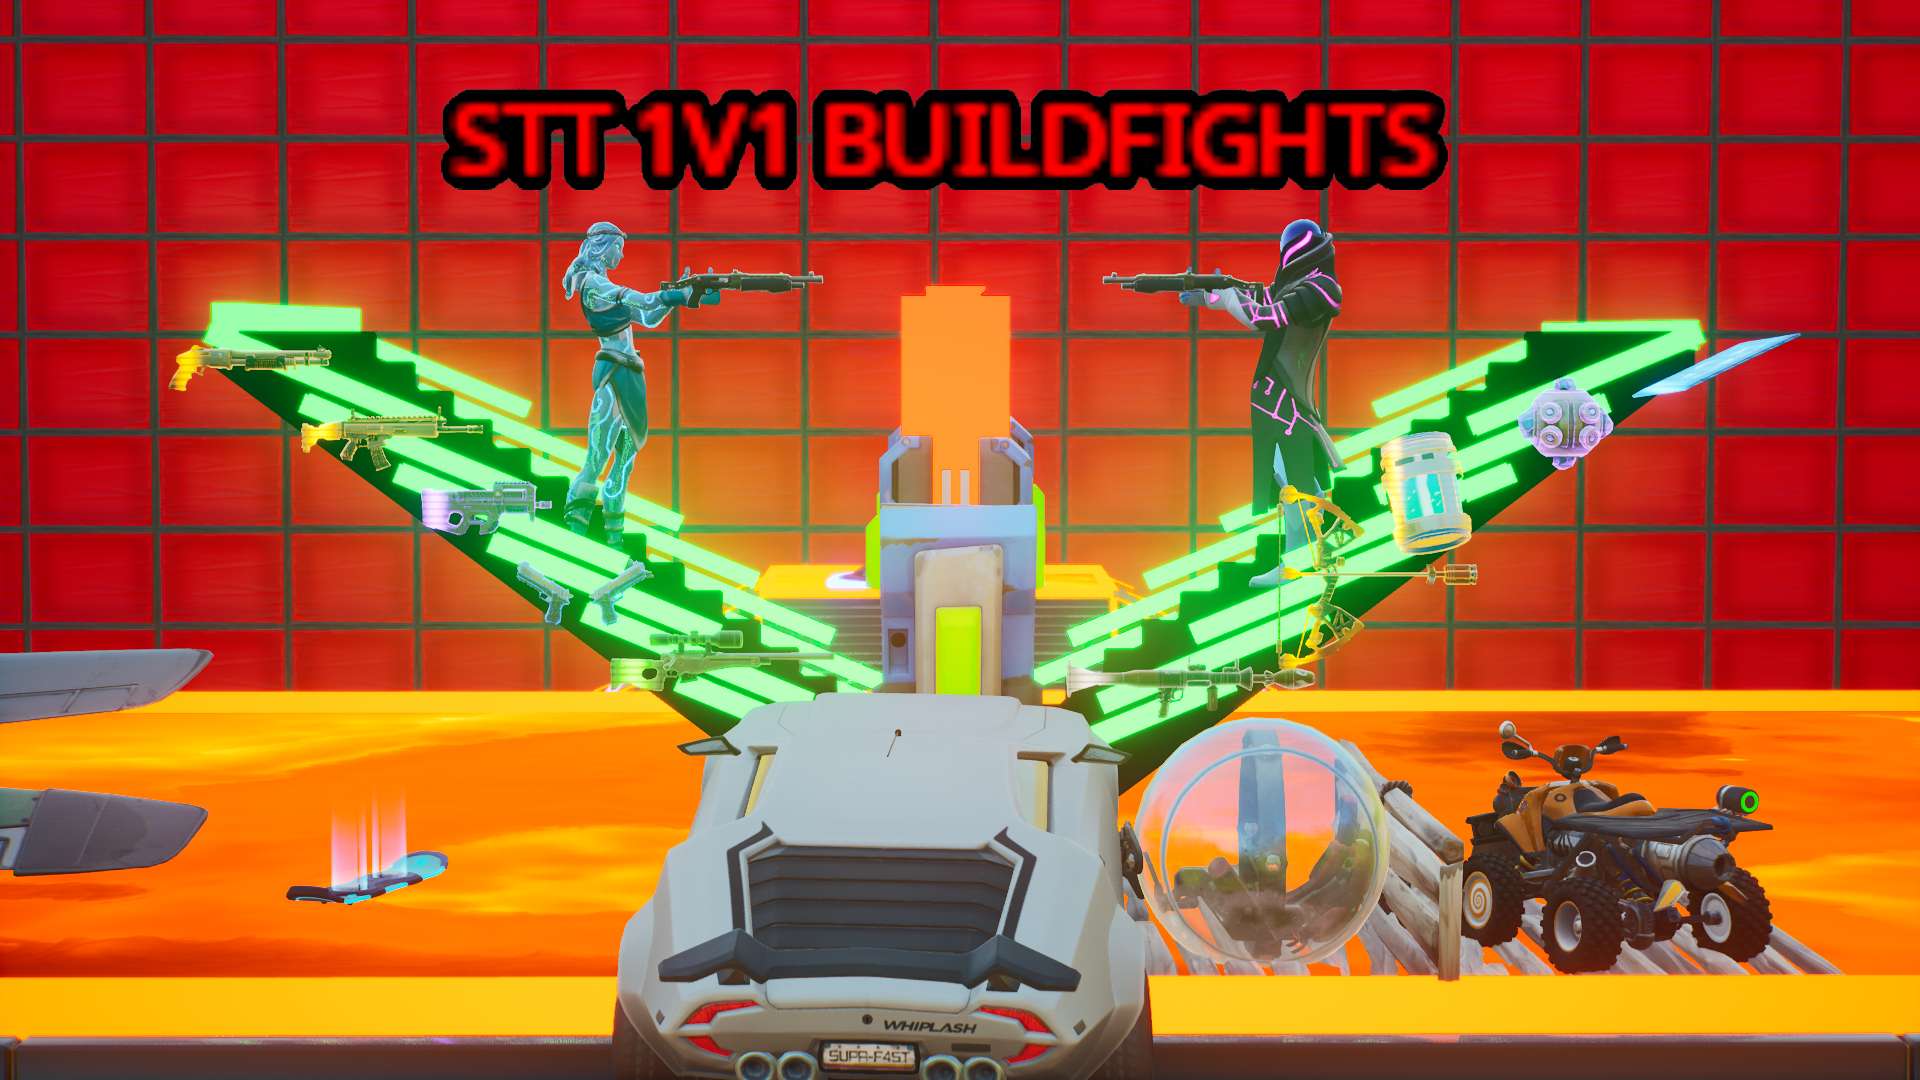 STT 1V1 BUILDFIGHTS